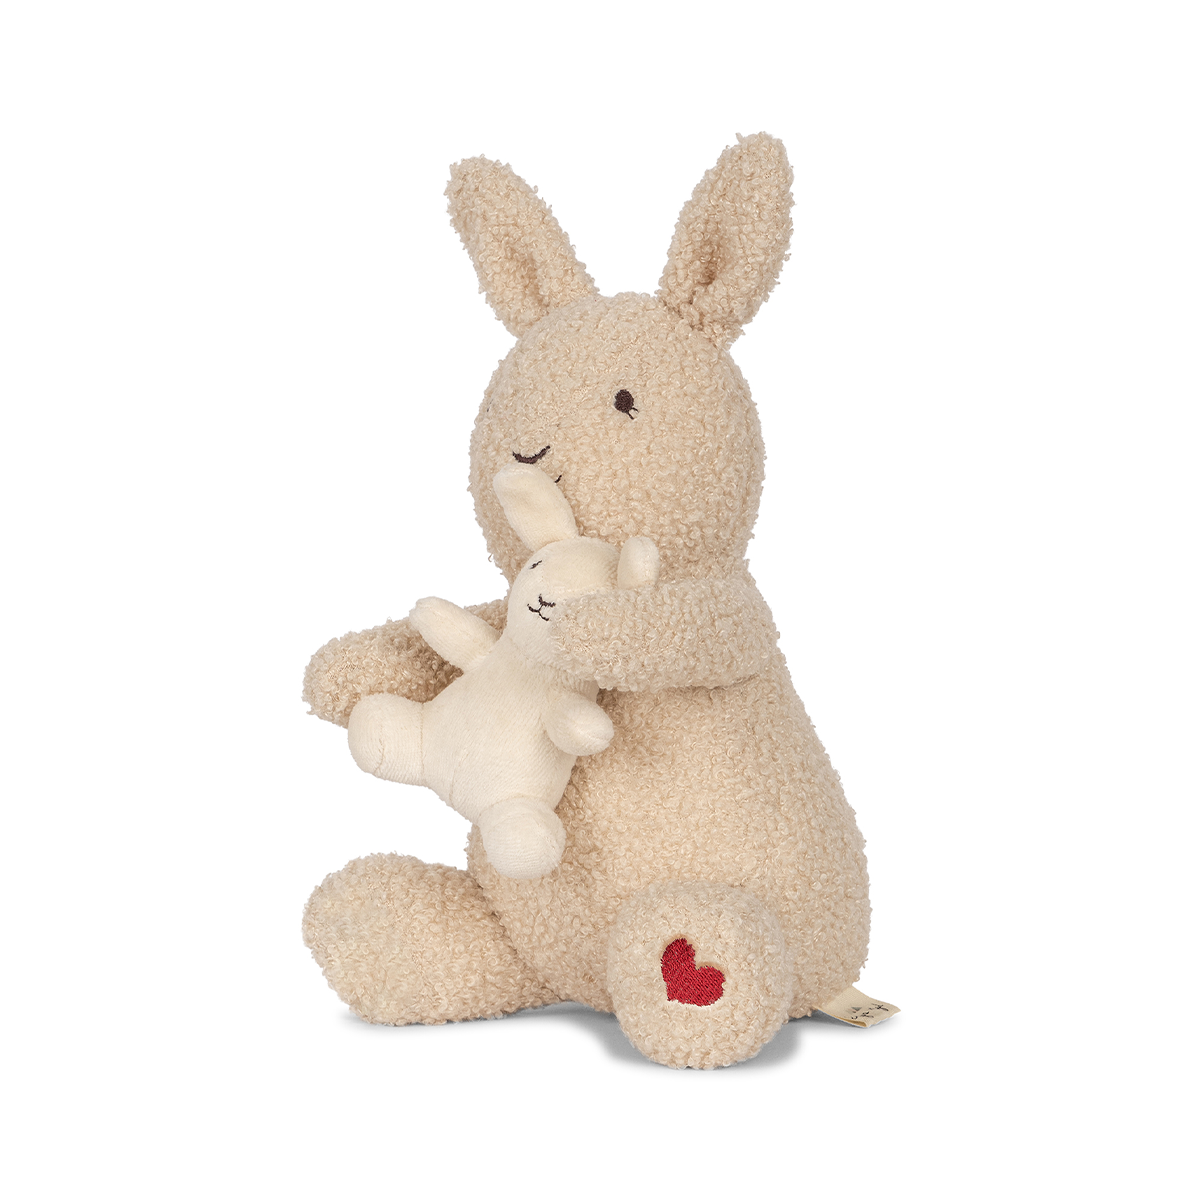 Deze te schattige teddy bunny knuffel is heel leuk voor de allerkleinsten. Deze leuke knuffel van Konges Slojd bestaat uit een mamakonijn en haar kleintje en ze zijn allebei superzacht. Het leuke is dat de knuffel ook nog eens muziek speelt als je trekt aan het babykonijntje.  VanZus